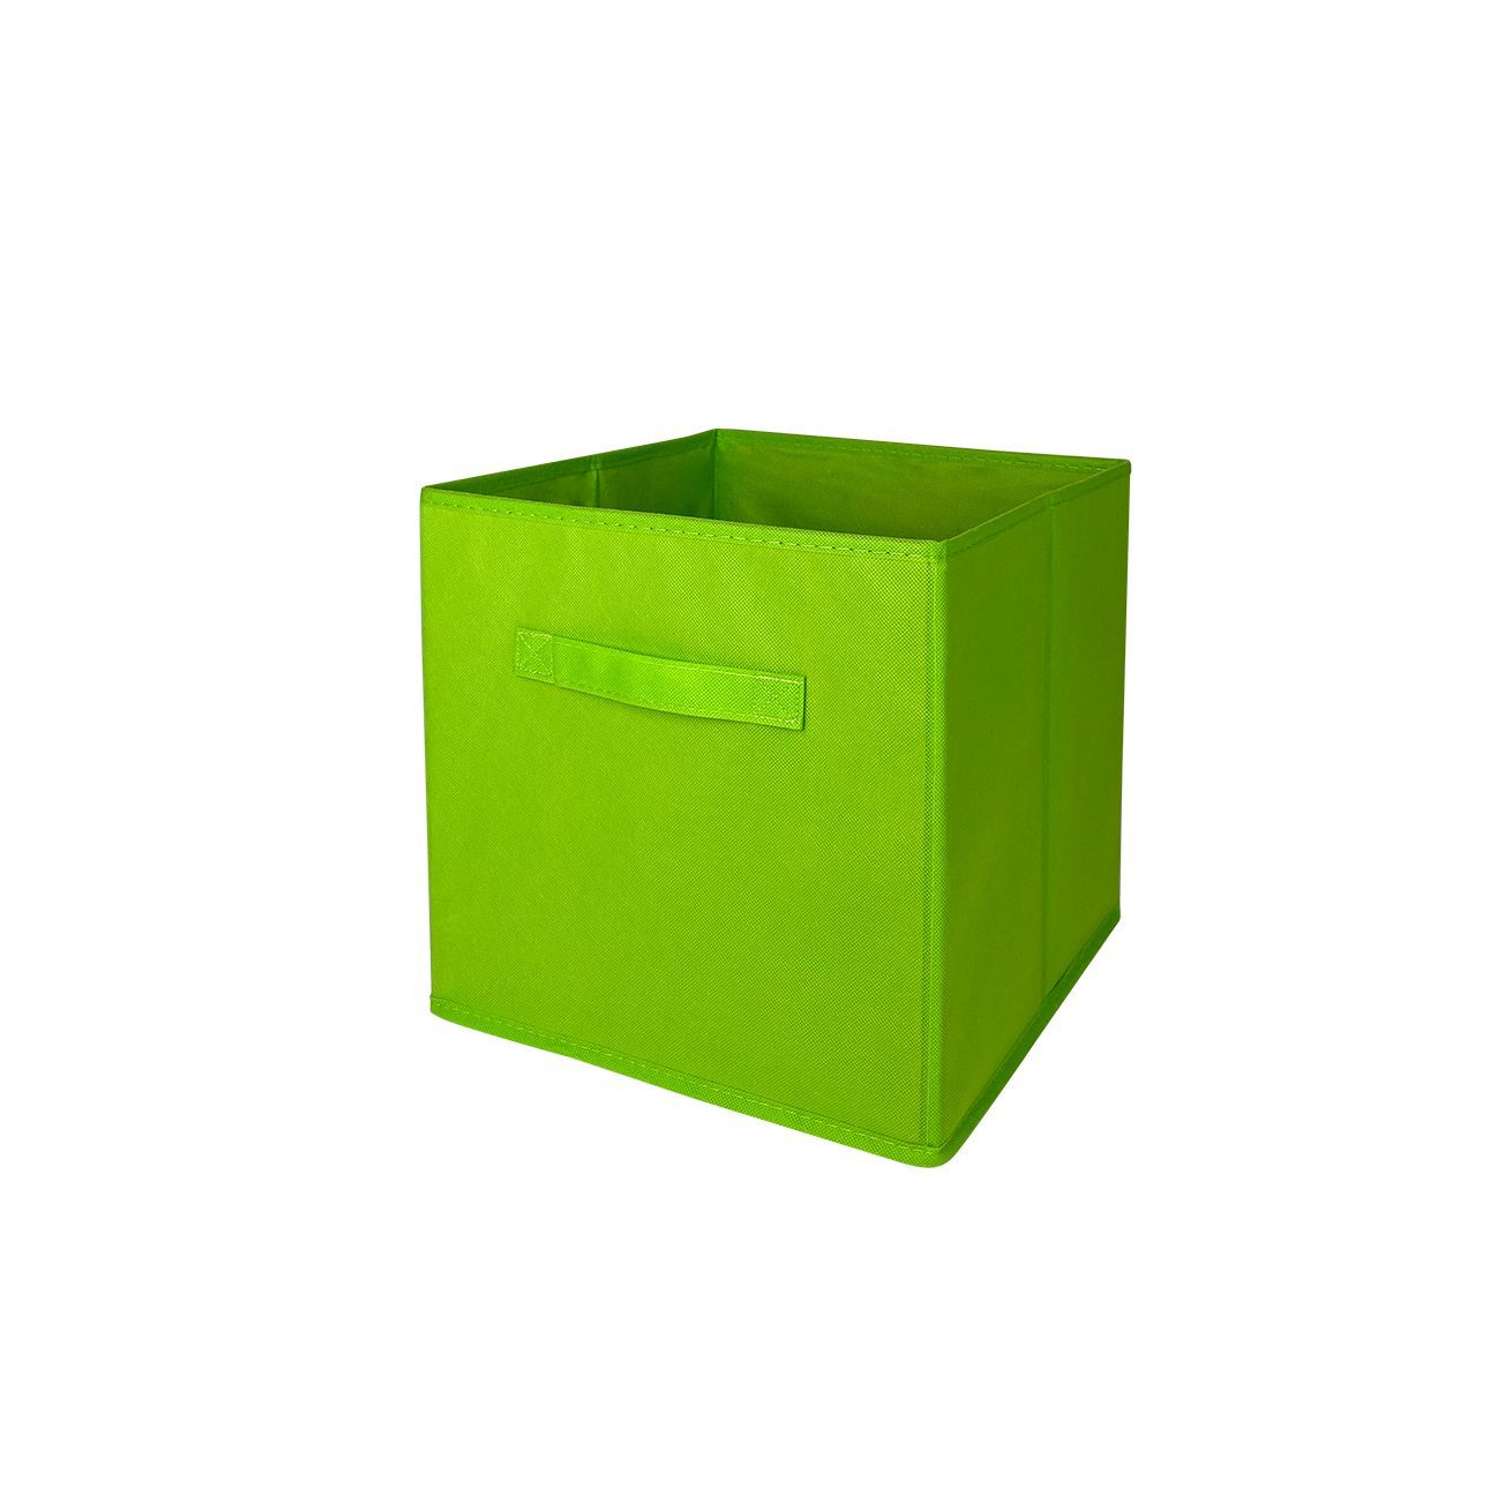 Короб-кубик ГЕЛЕОС для хранения вещей и игрушек КУБ 33-3 30х30х30см салатовый - фото 12